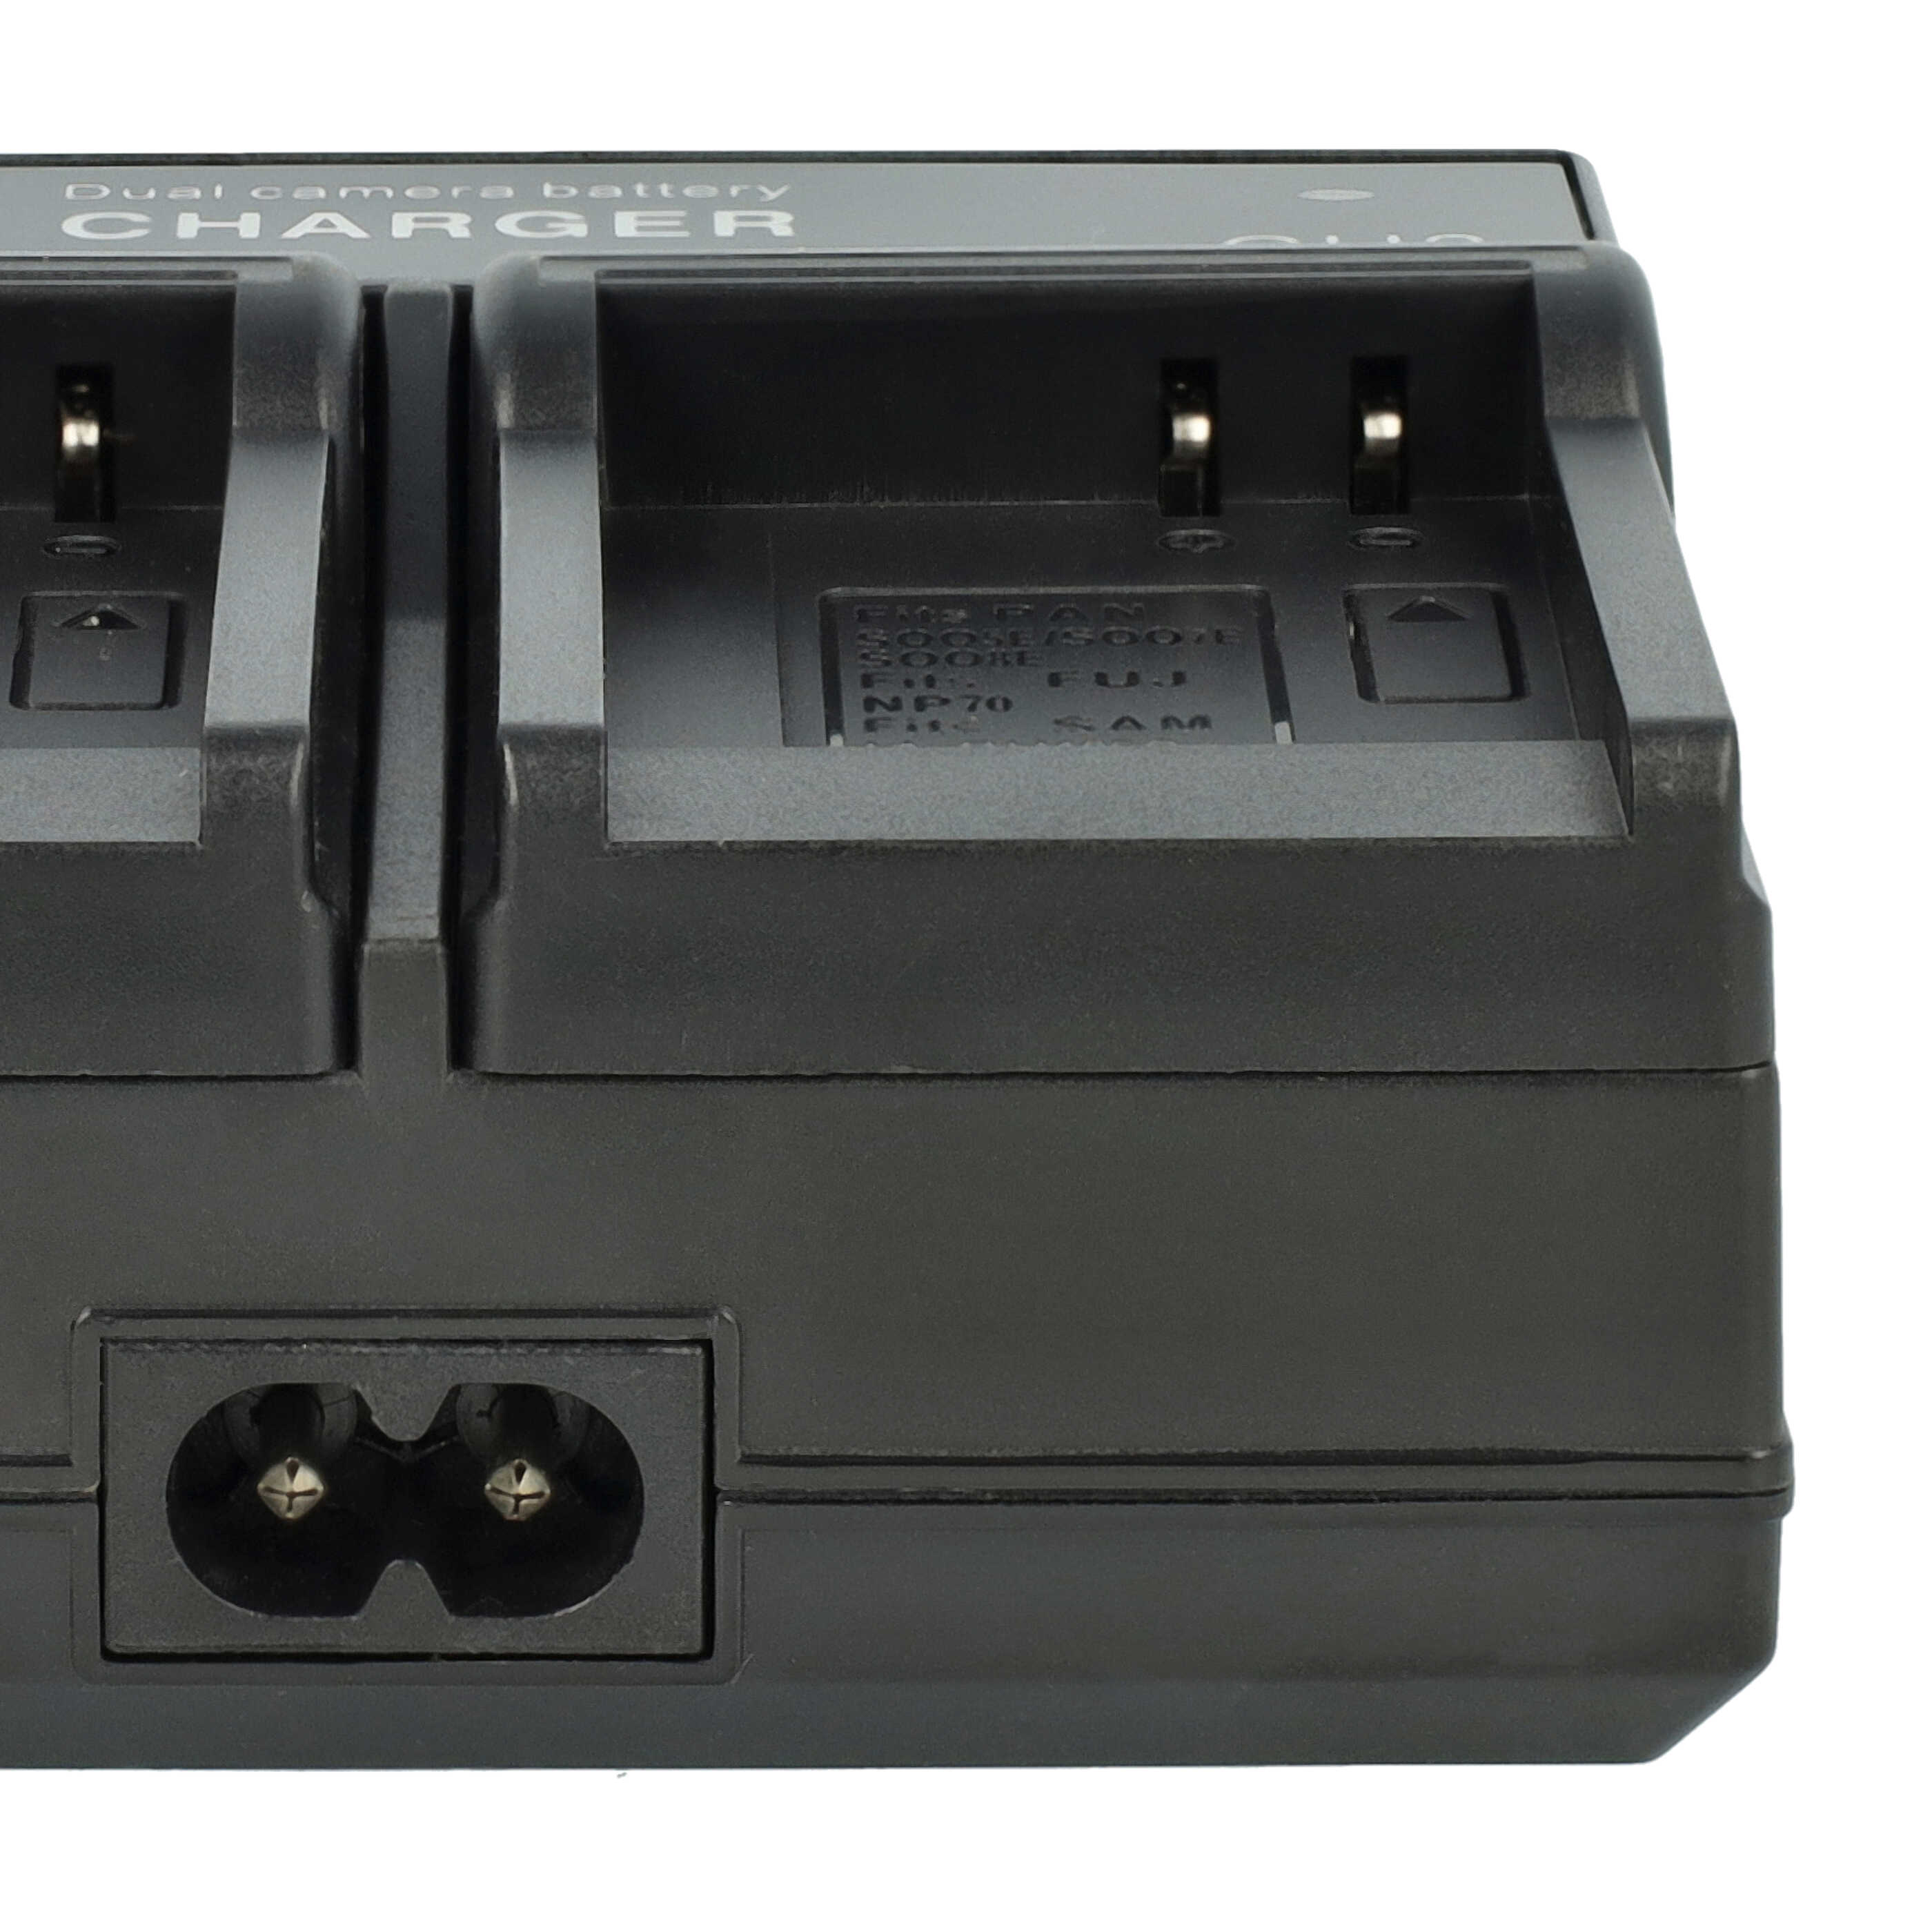 Caricabatterie per fotocamera FinePix - 0.5 / 0.9A 4.2/8.4V 114,5cm